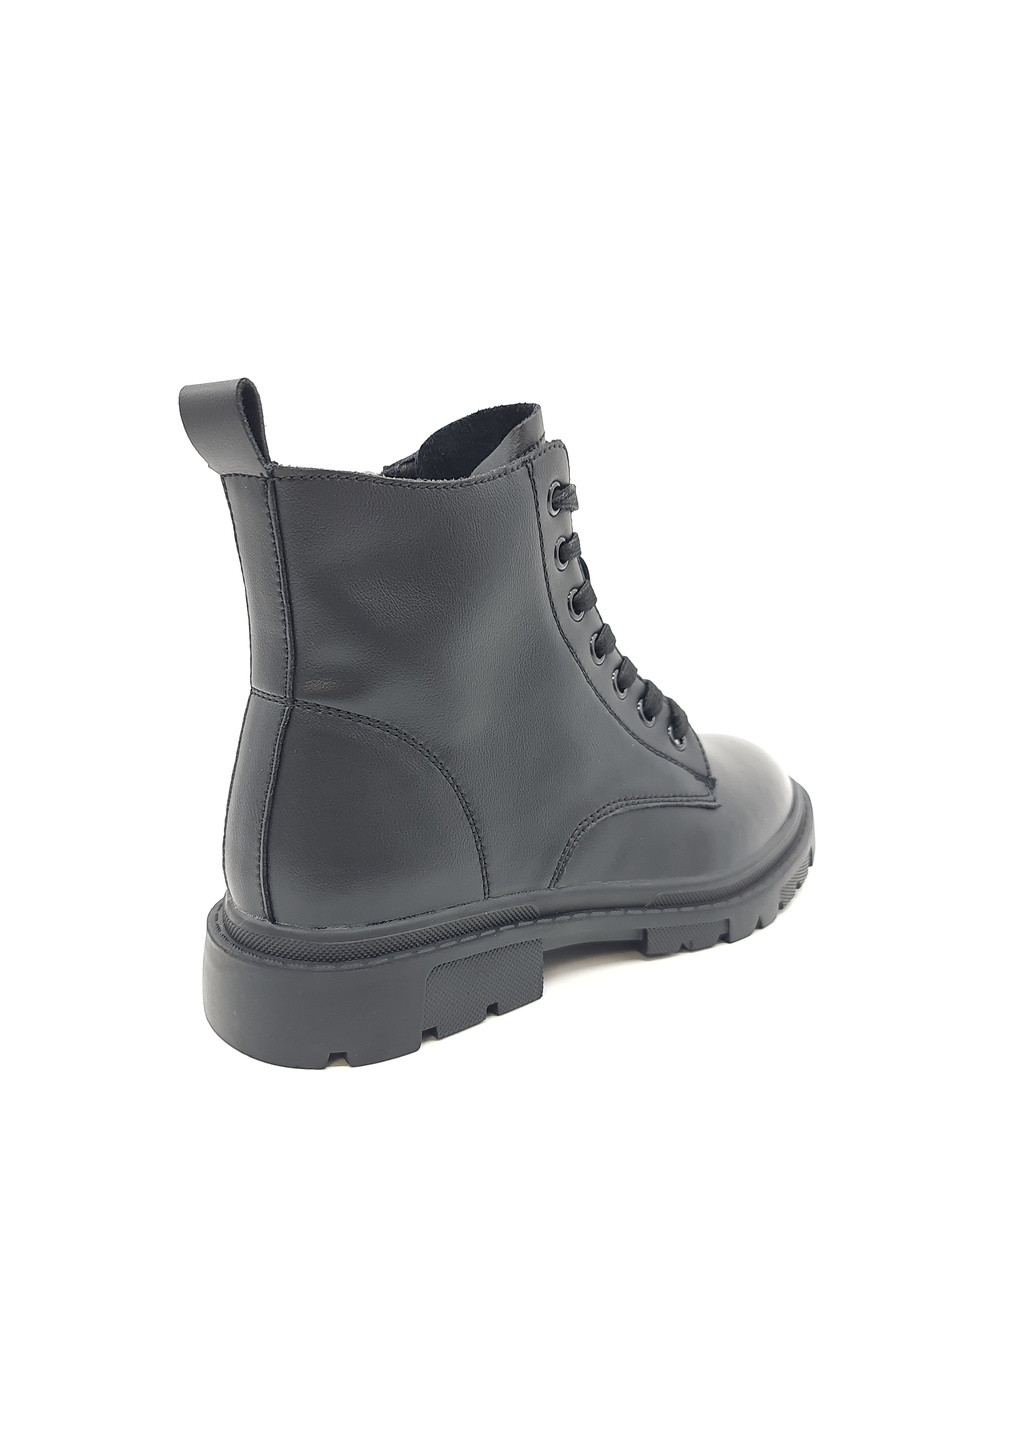 Осенние женские ботинки черные кожаные l-11-10 23 см (р) Lonza